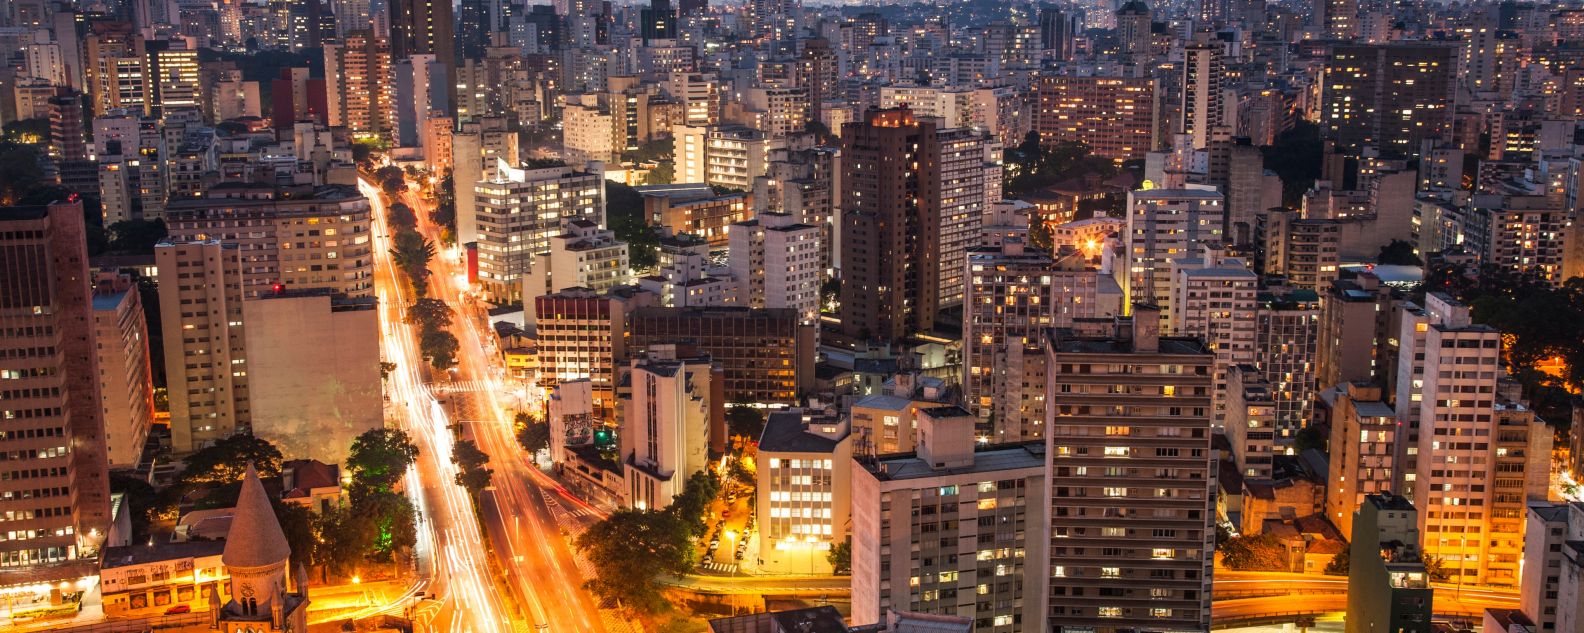 Sao Paulo city lights at dusk